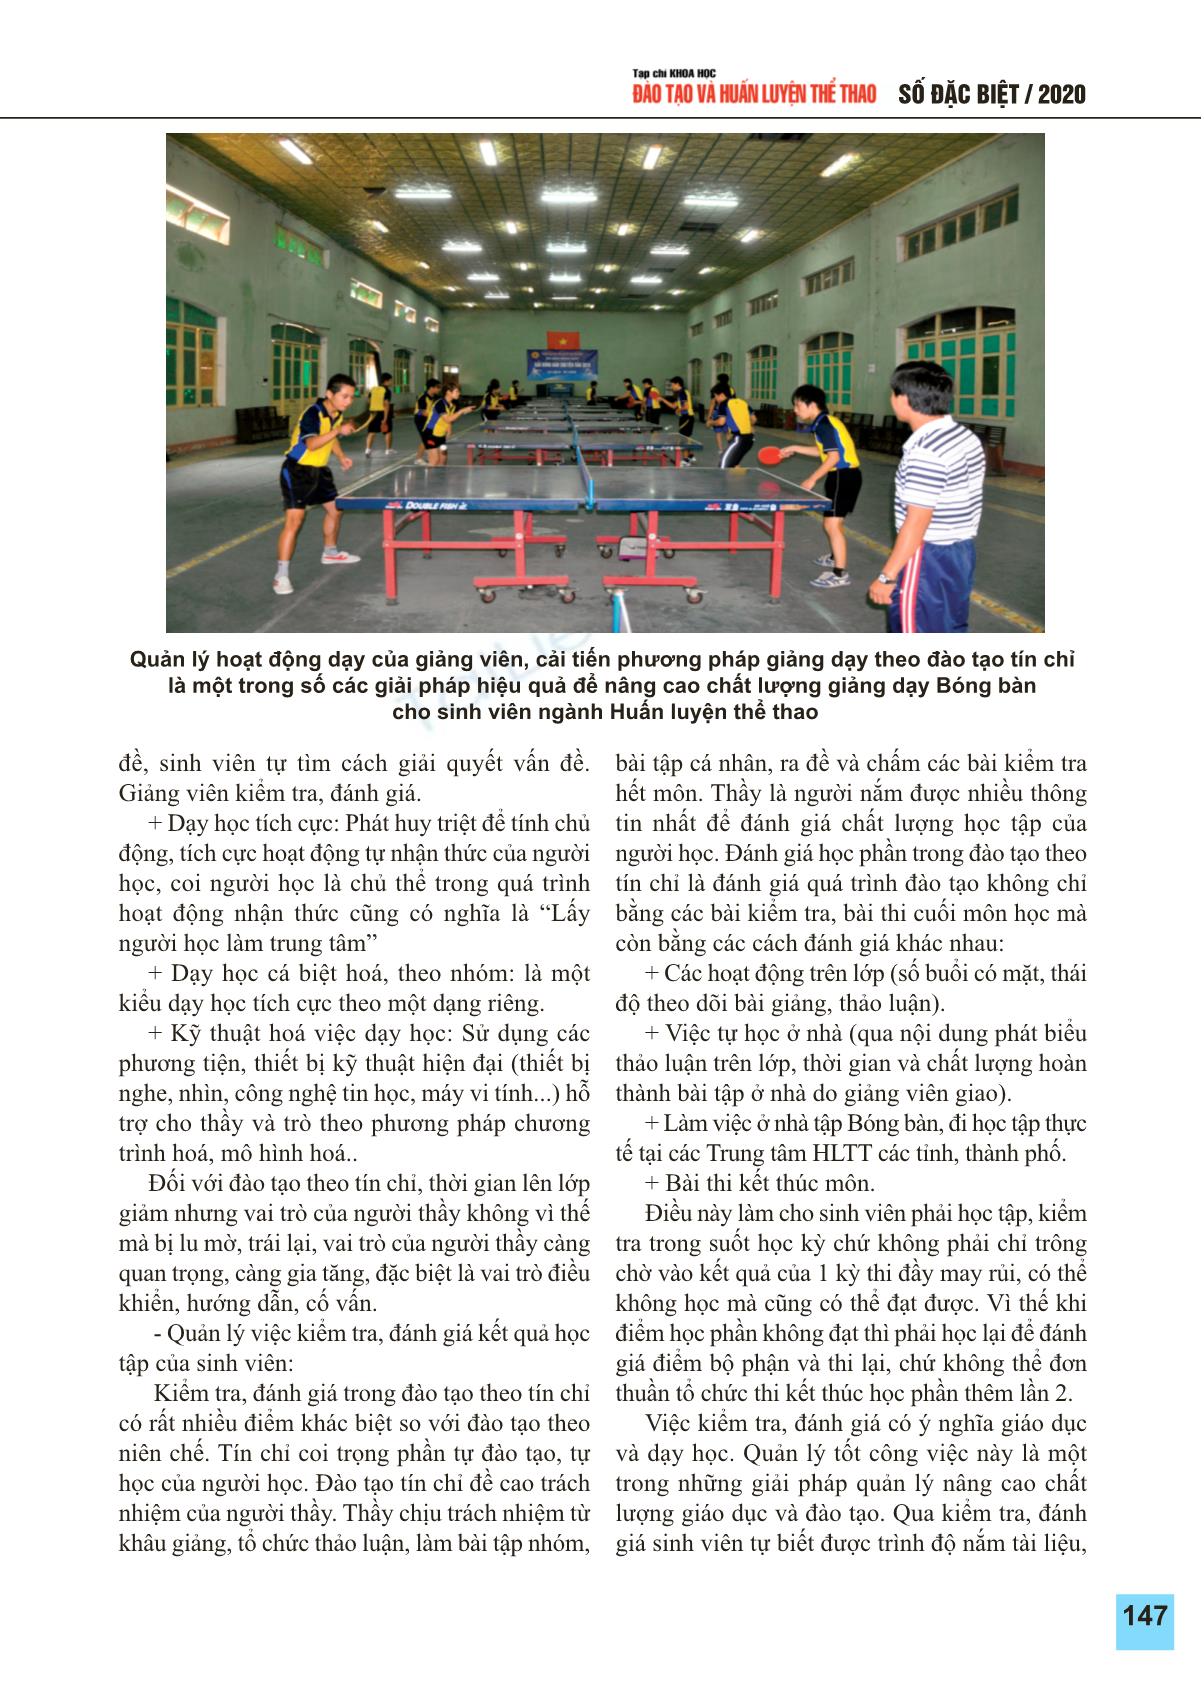 Giải pháp nâng cao chất lượng dạy học môn bóng bàn cho sinh viên ngành huấn luyện thể thao đào tạo theo học chế tín chỉ ở trường Đại học Thể dục thể thao Bắc Ninh trang 4